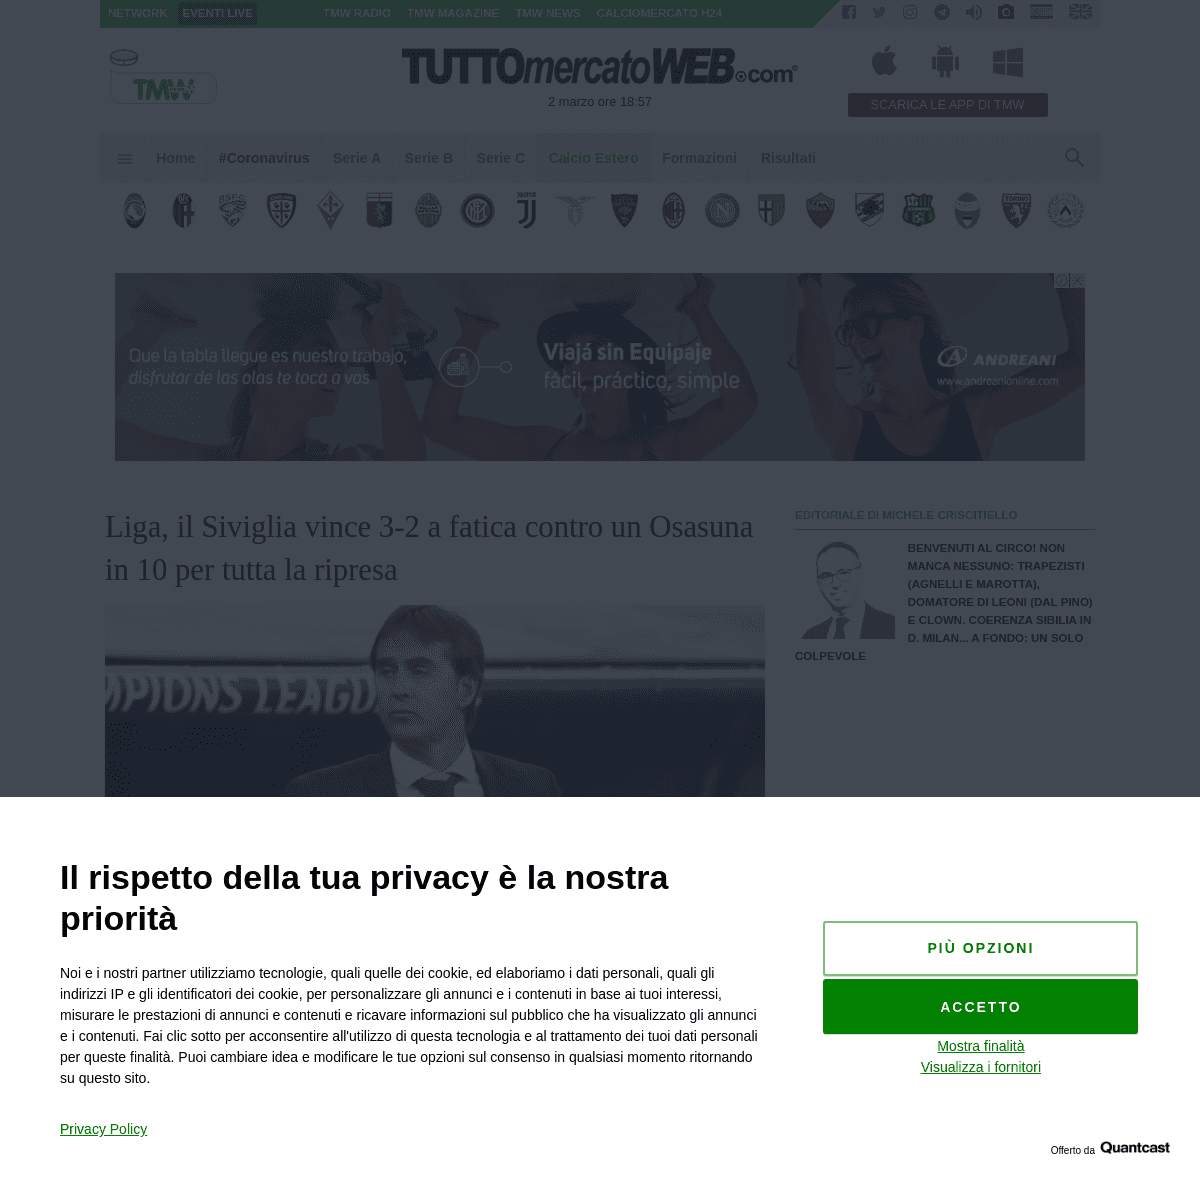 A complete backup of www.tuttomercatoweb.com/calcio-estero/liga-il-siviglia-vince-3-2-a-fatica-contro-un-osasuna-in-10-per-tutta